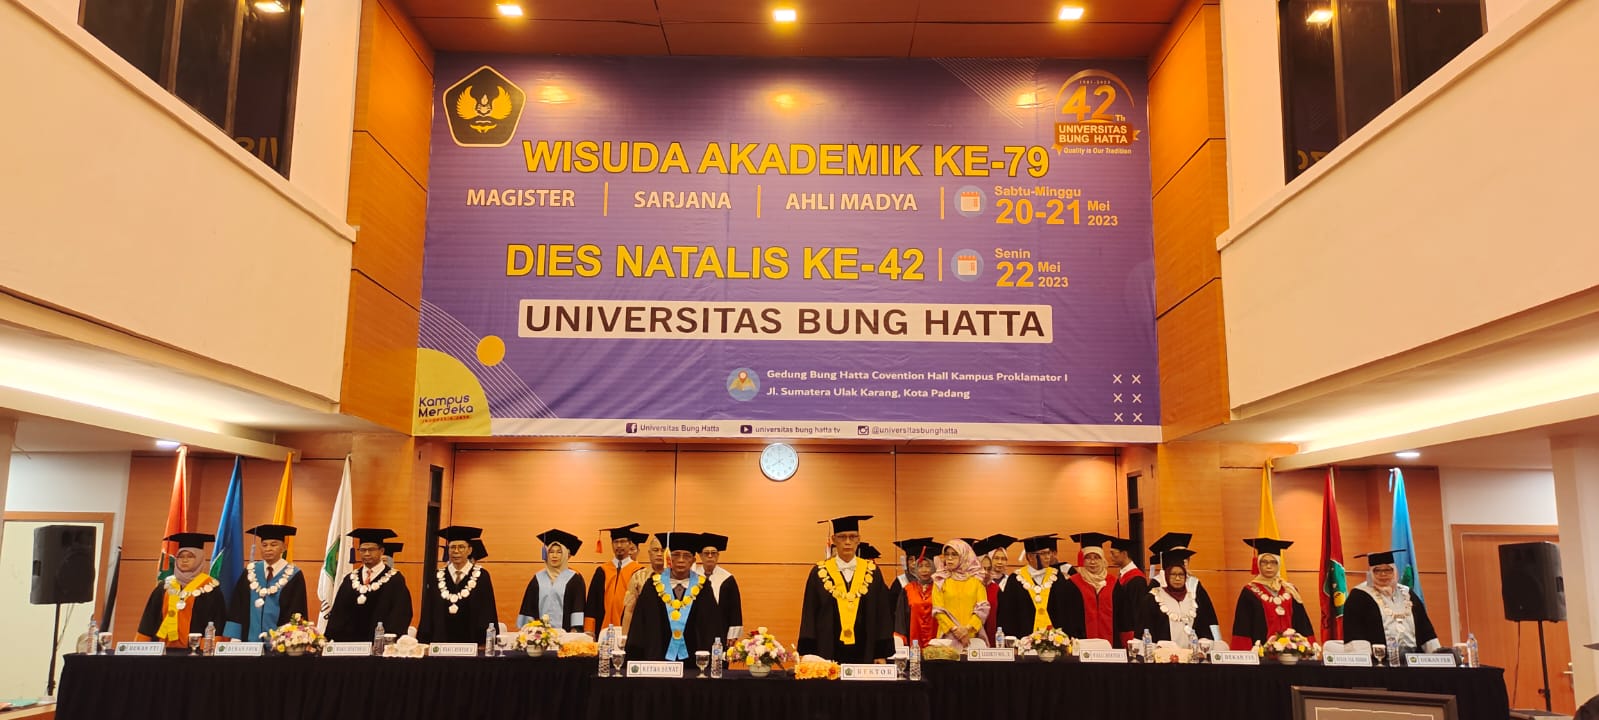 Rektor Resmi Lantik Wisudawan ke-79 Universitas Bung Hatta